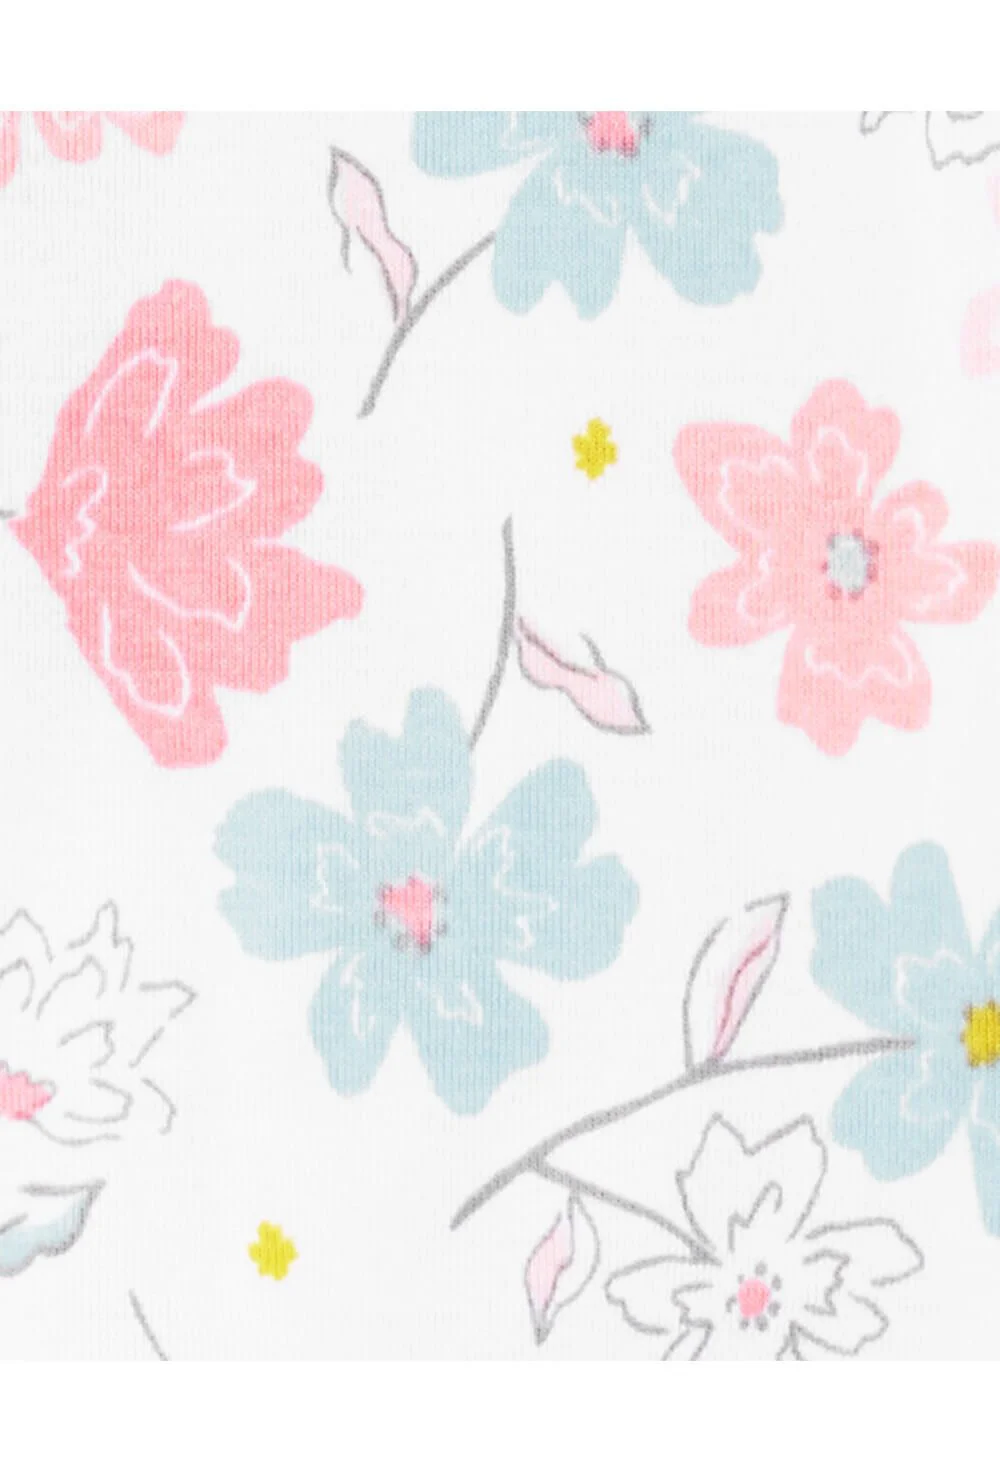 Carter's Pijama alba cu flori 100% Bumbac Organic